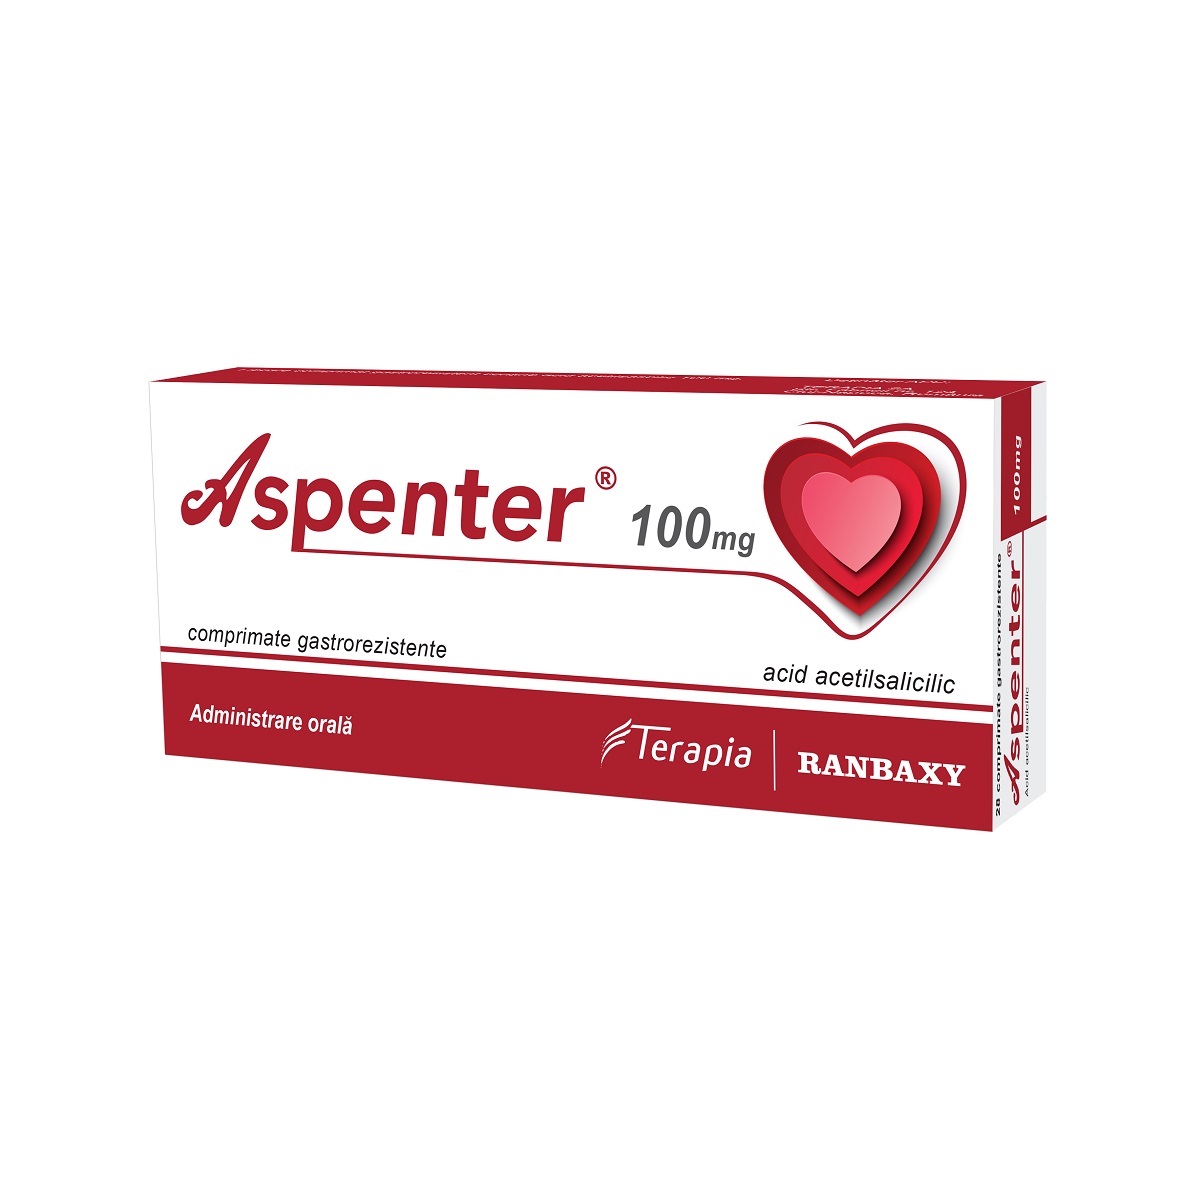 Aspenter, 100 mg, 28 comprimate gastrorezistente